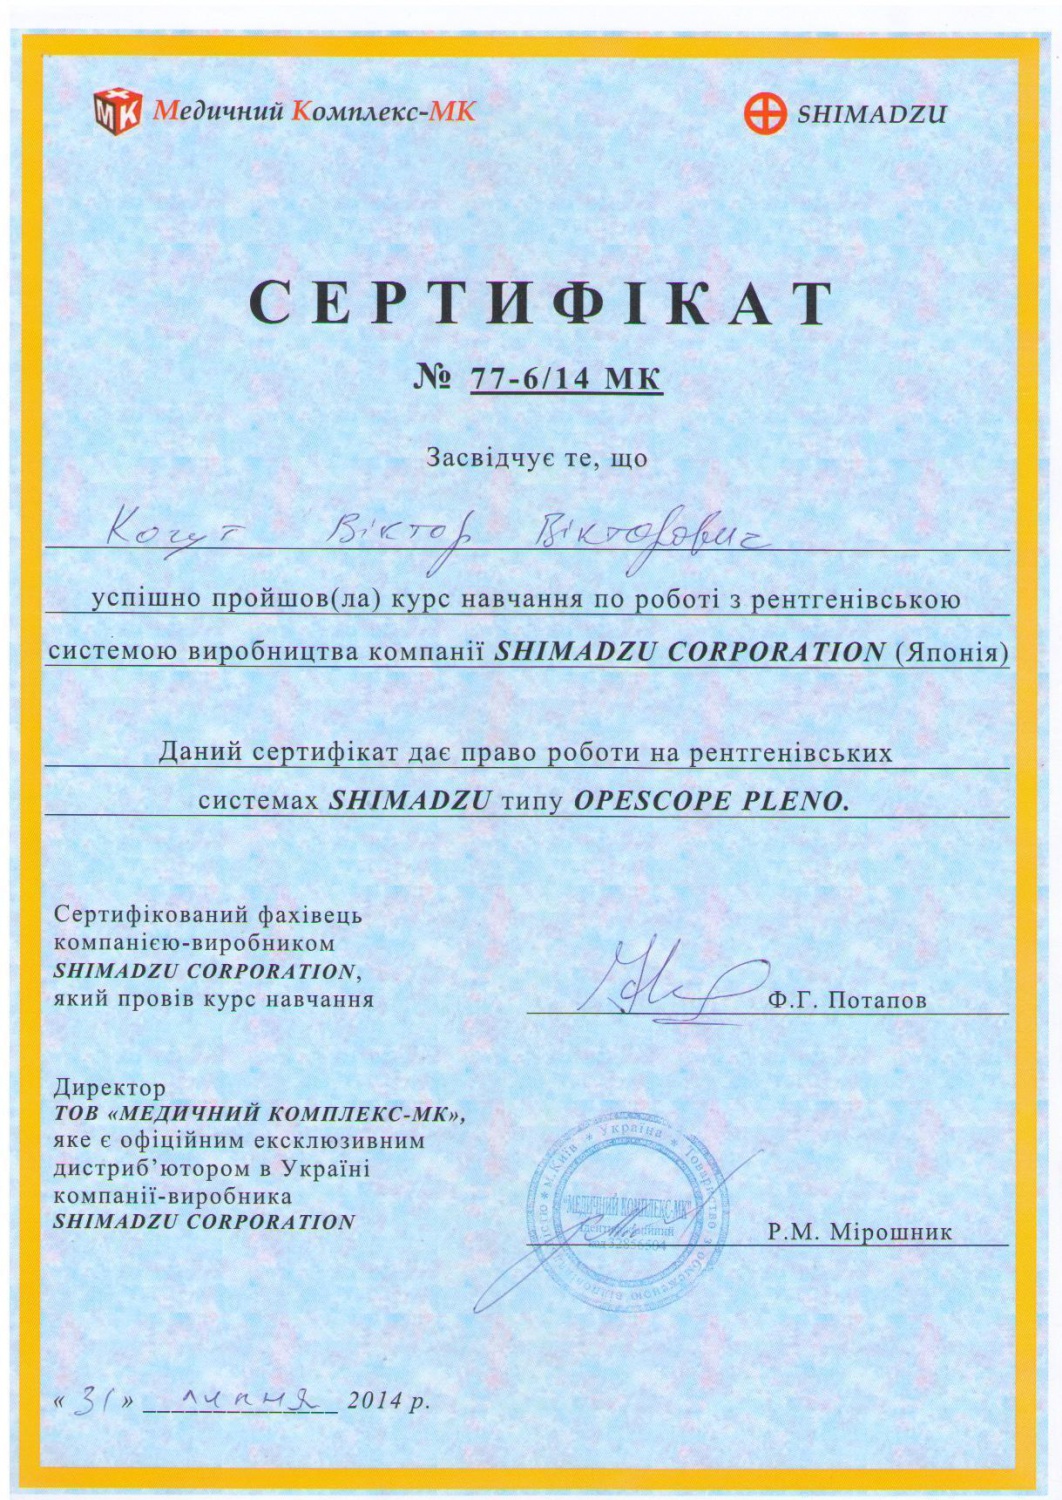 Когут В.В. - Сертифікат подтверджуючий успішне проходження курсу навчання по роботі з рентгенівською системою SHIMADZU OPESCOPE PLENO (2014 г.)